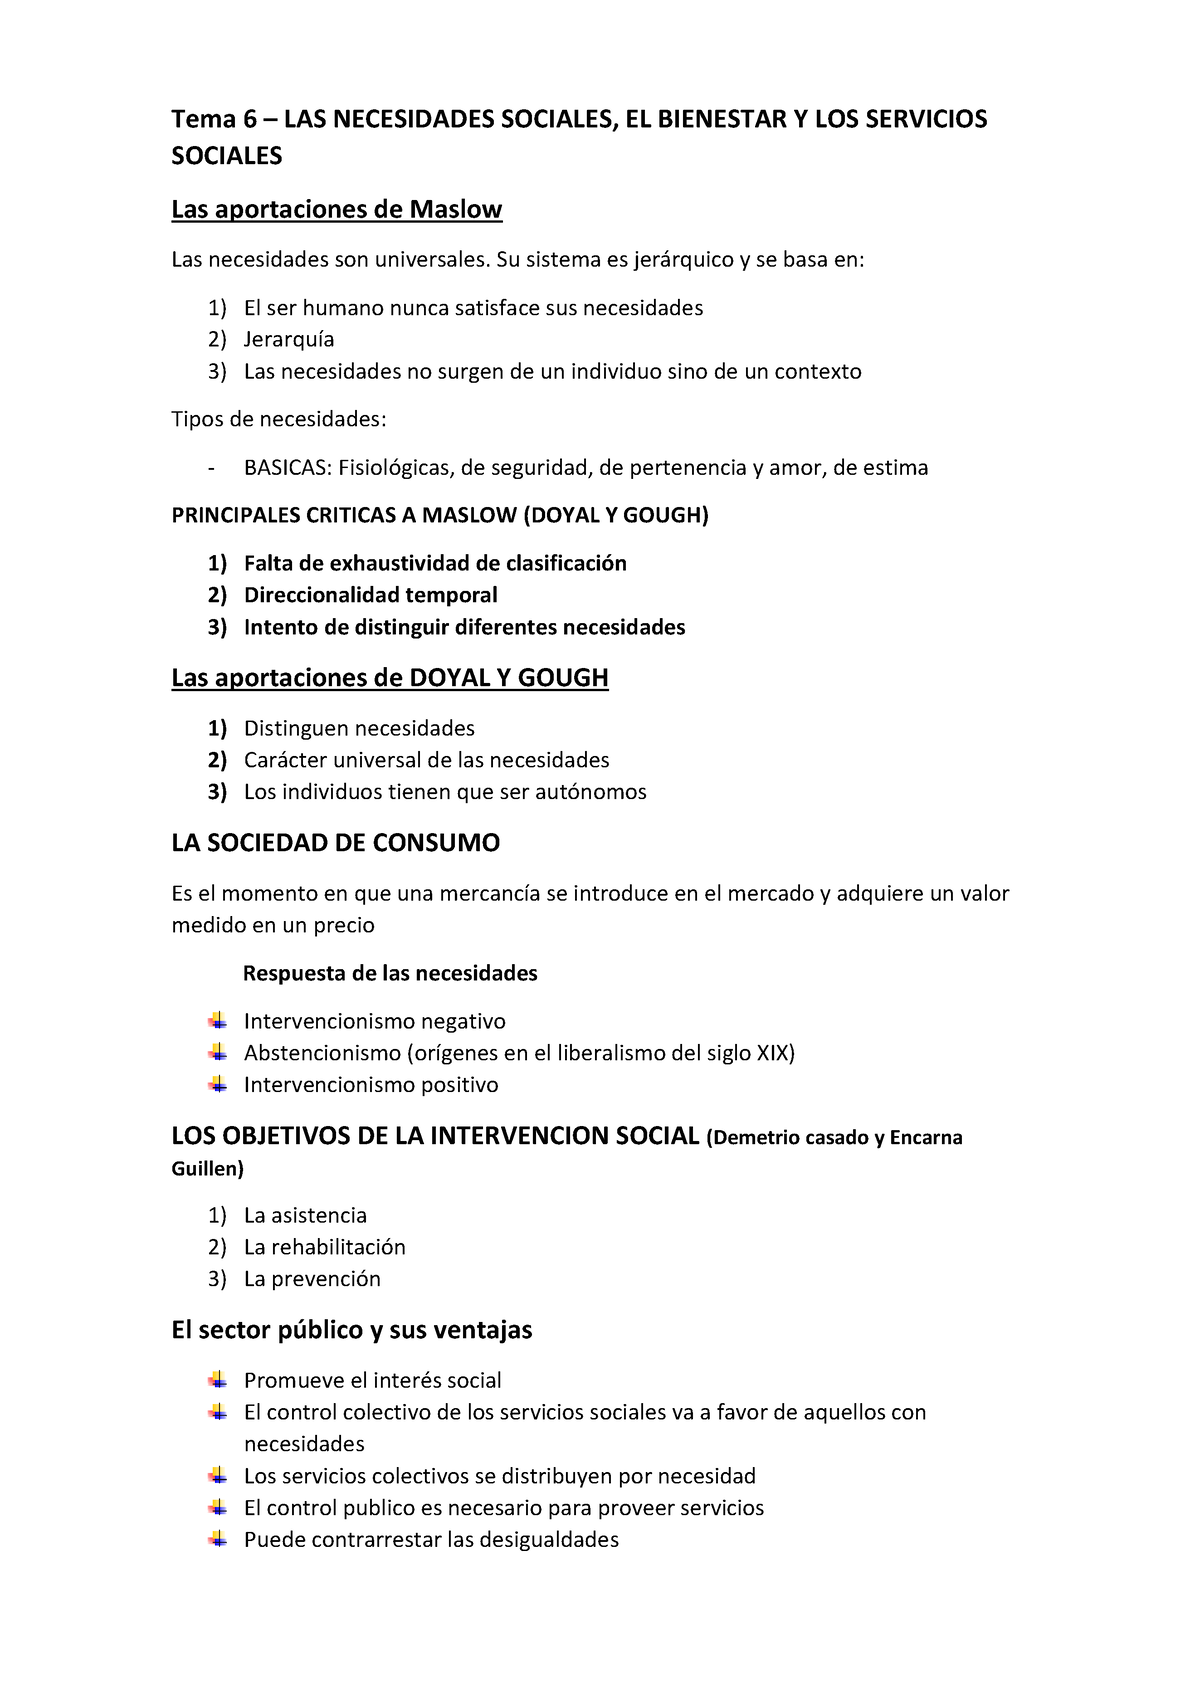 Apuntes Tema 6 Introduccion Servicios Sociales Tema 6 Las Necesidades Sociales El Bienestar 3031